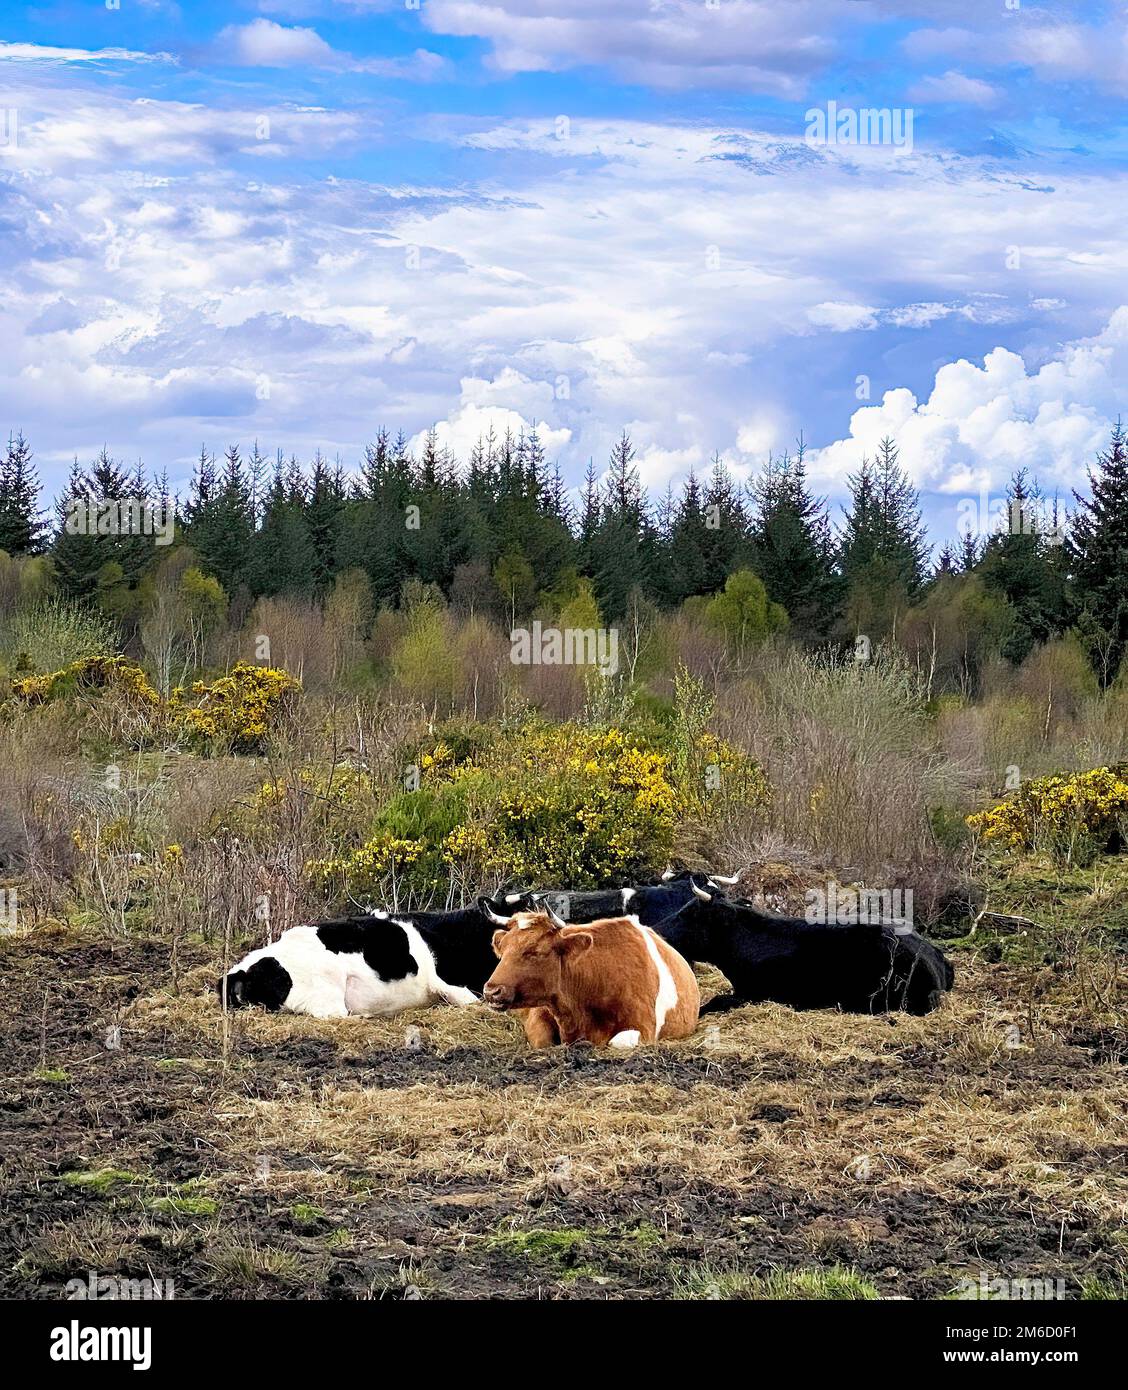 Drei Kühe oder Bullen ruhen am Rande einer Weide. Wald, Gras, blauer Himmel mit Wolken dahinter. Ruhige, ruhige Stimmung. Speicherplatz kopieren. Stockfoto